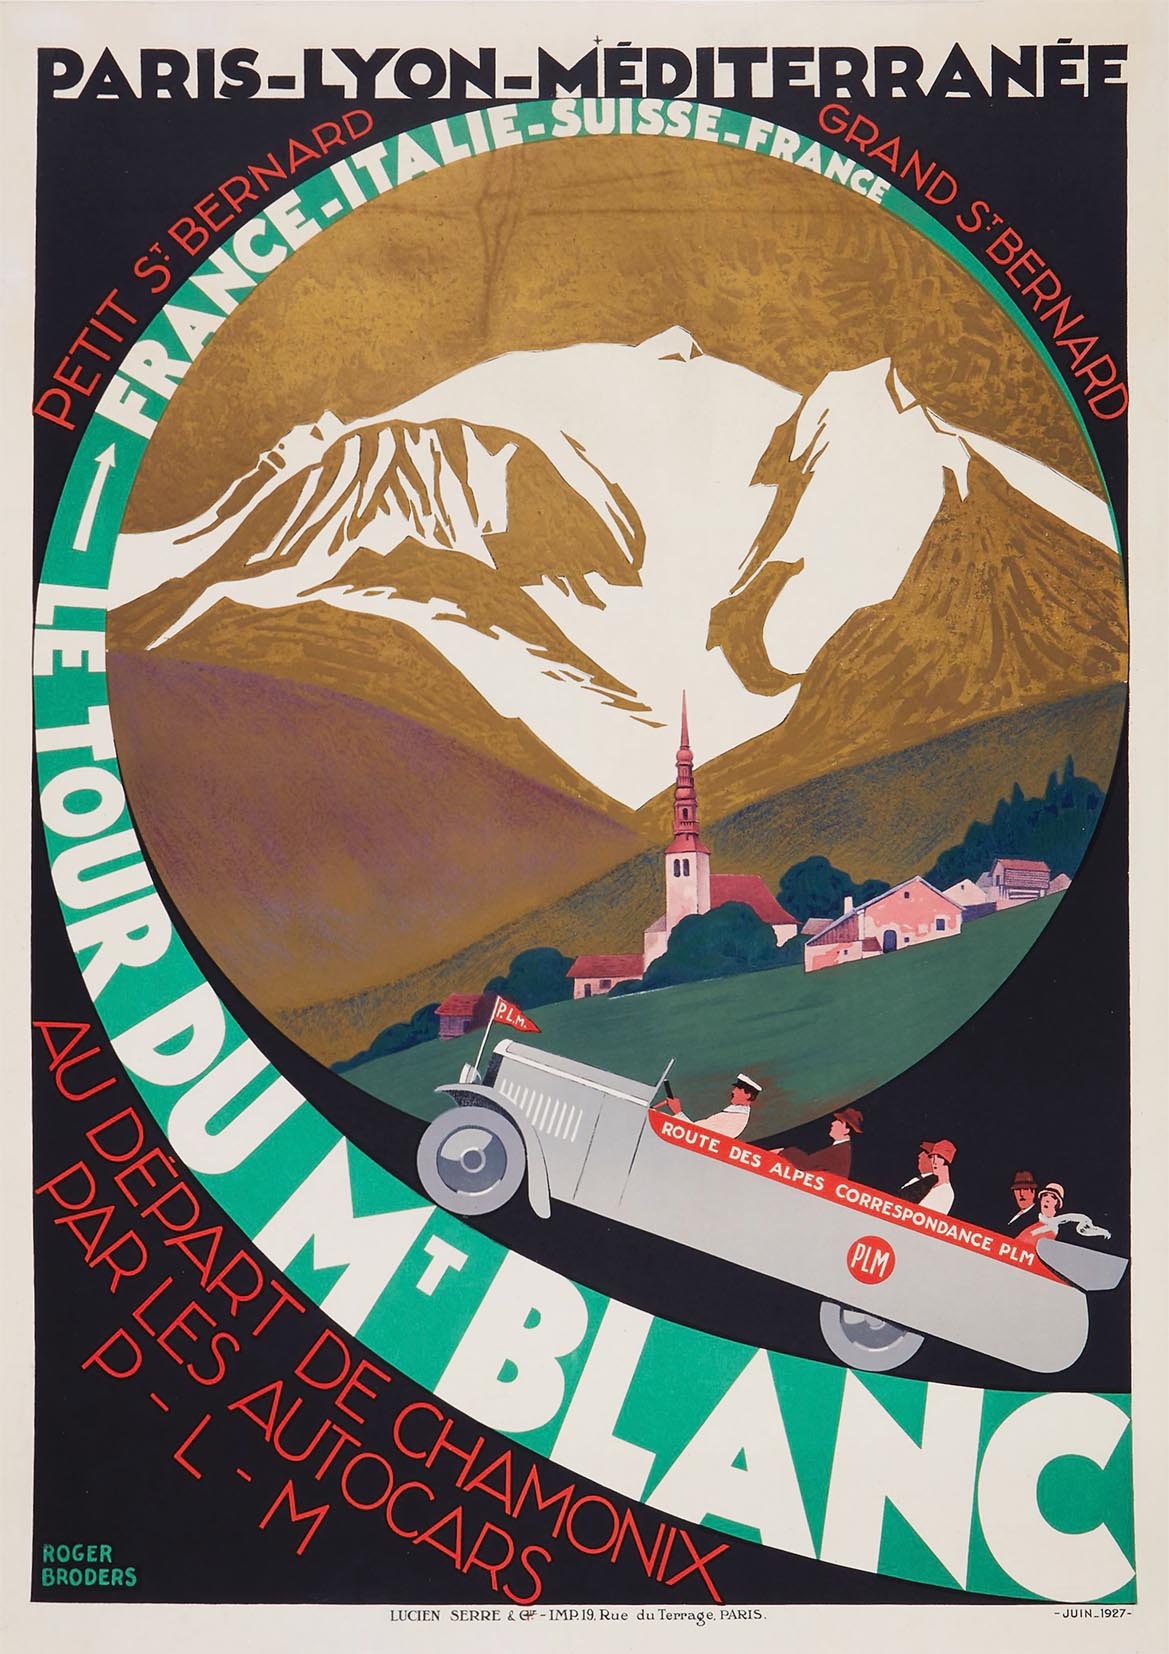 TOUR DU MONT BLANC POSTER: Vintage PLM Travel Advert Art Print